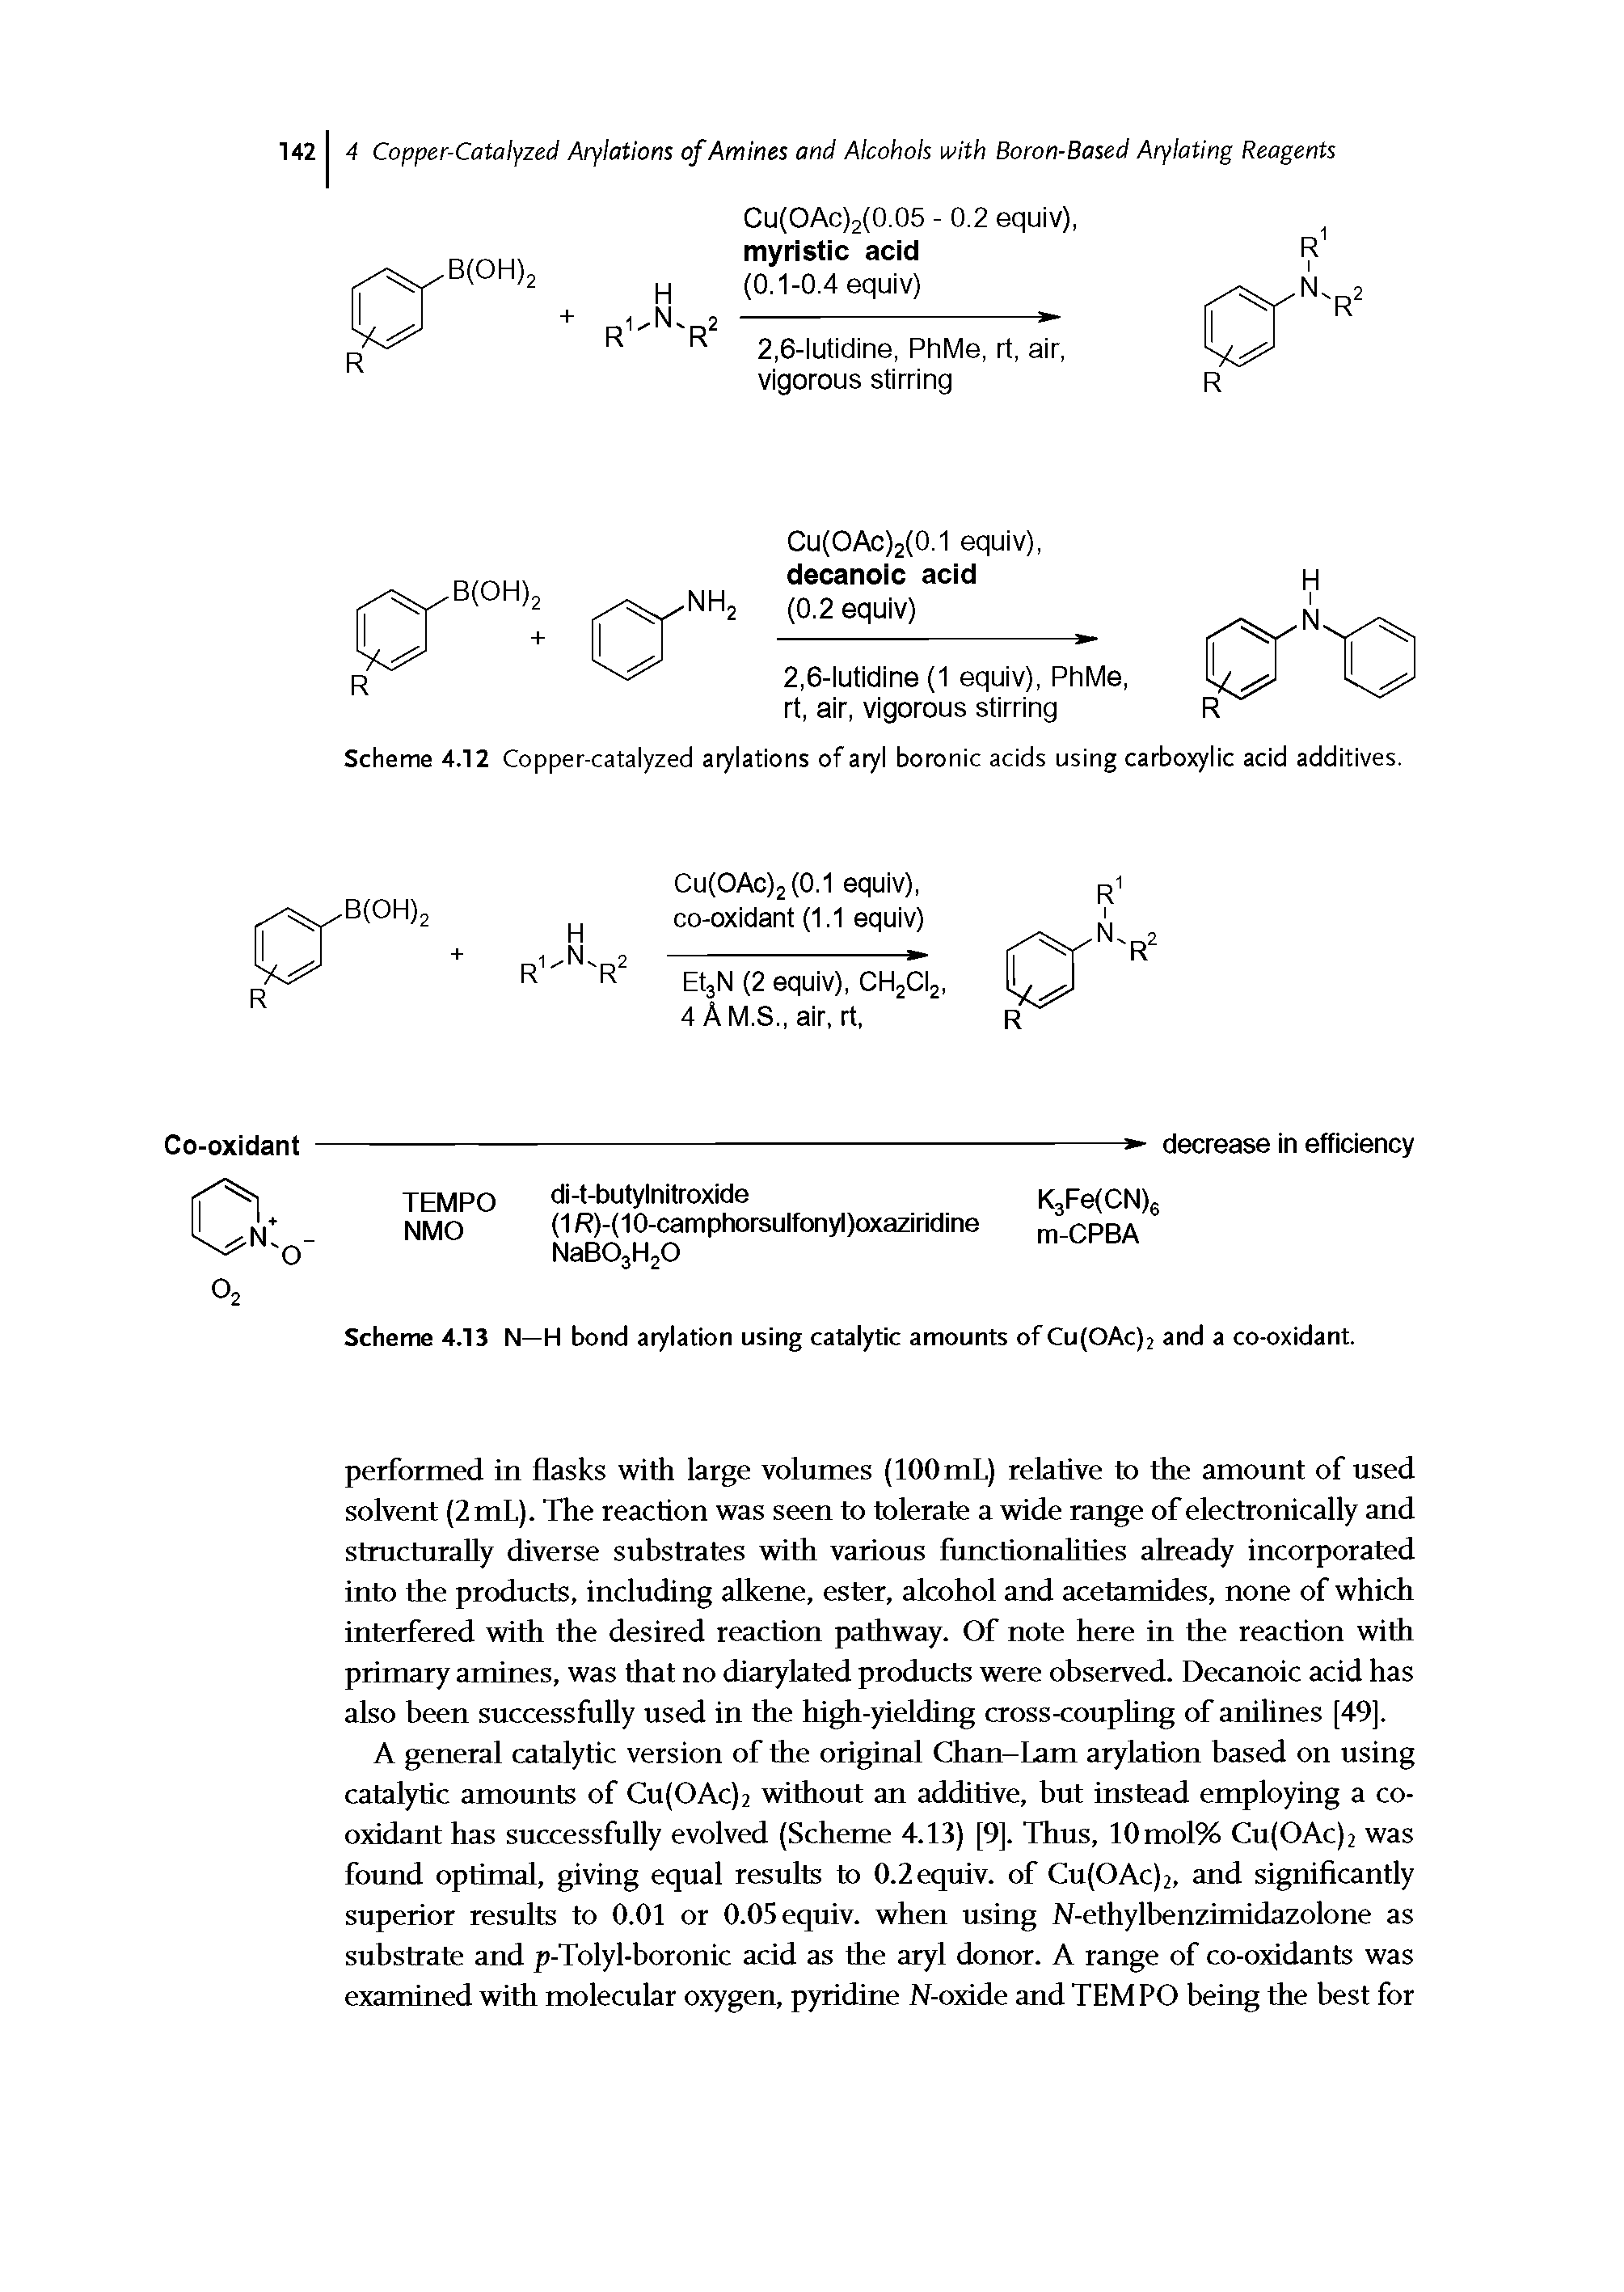 Scheme 4.12 Copper-catalyzed arylations of aryl boronic acids using carboxylic acid additives.